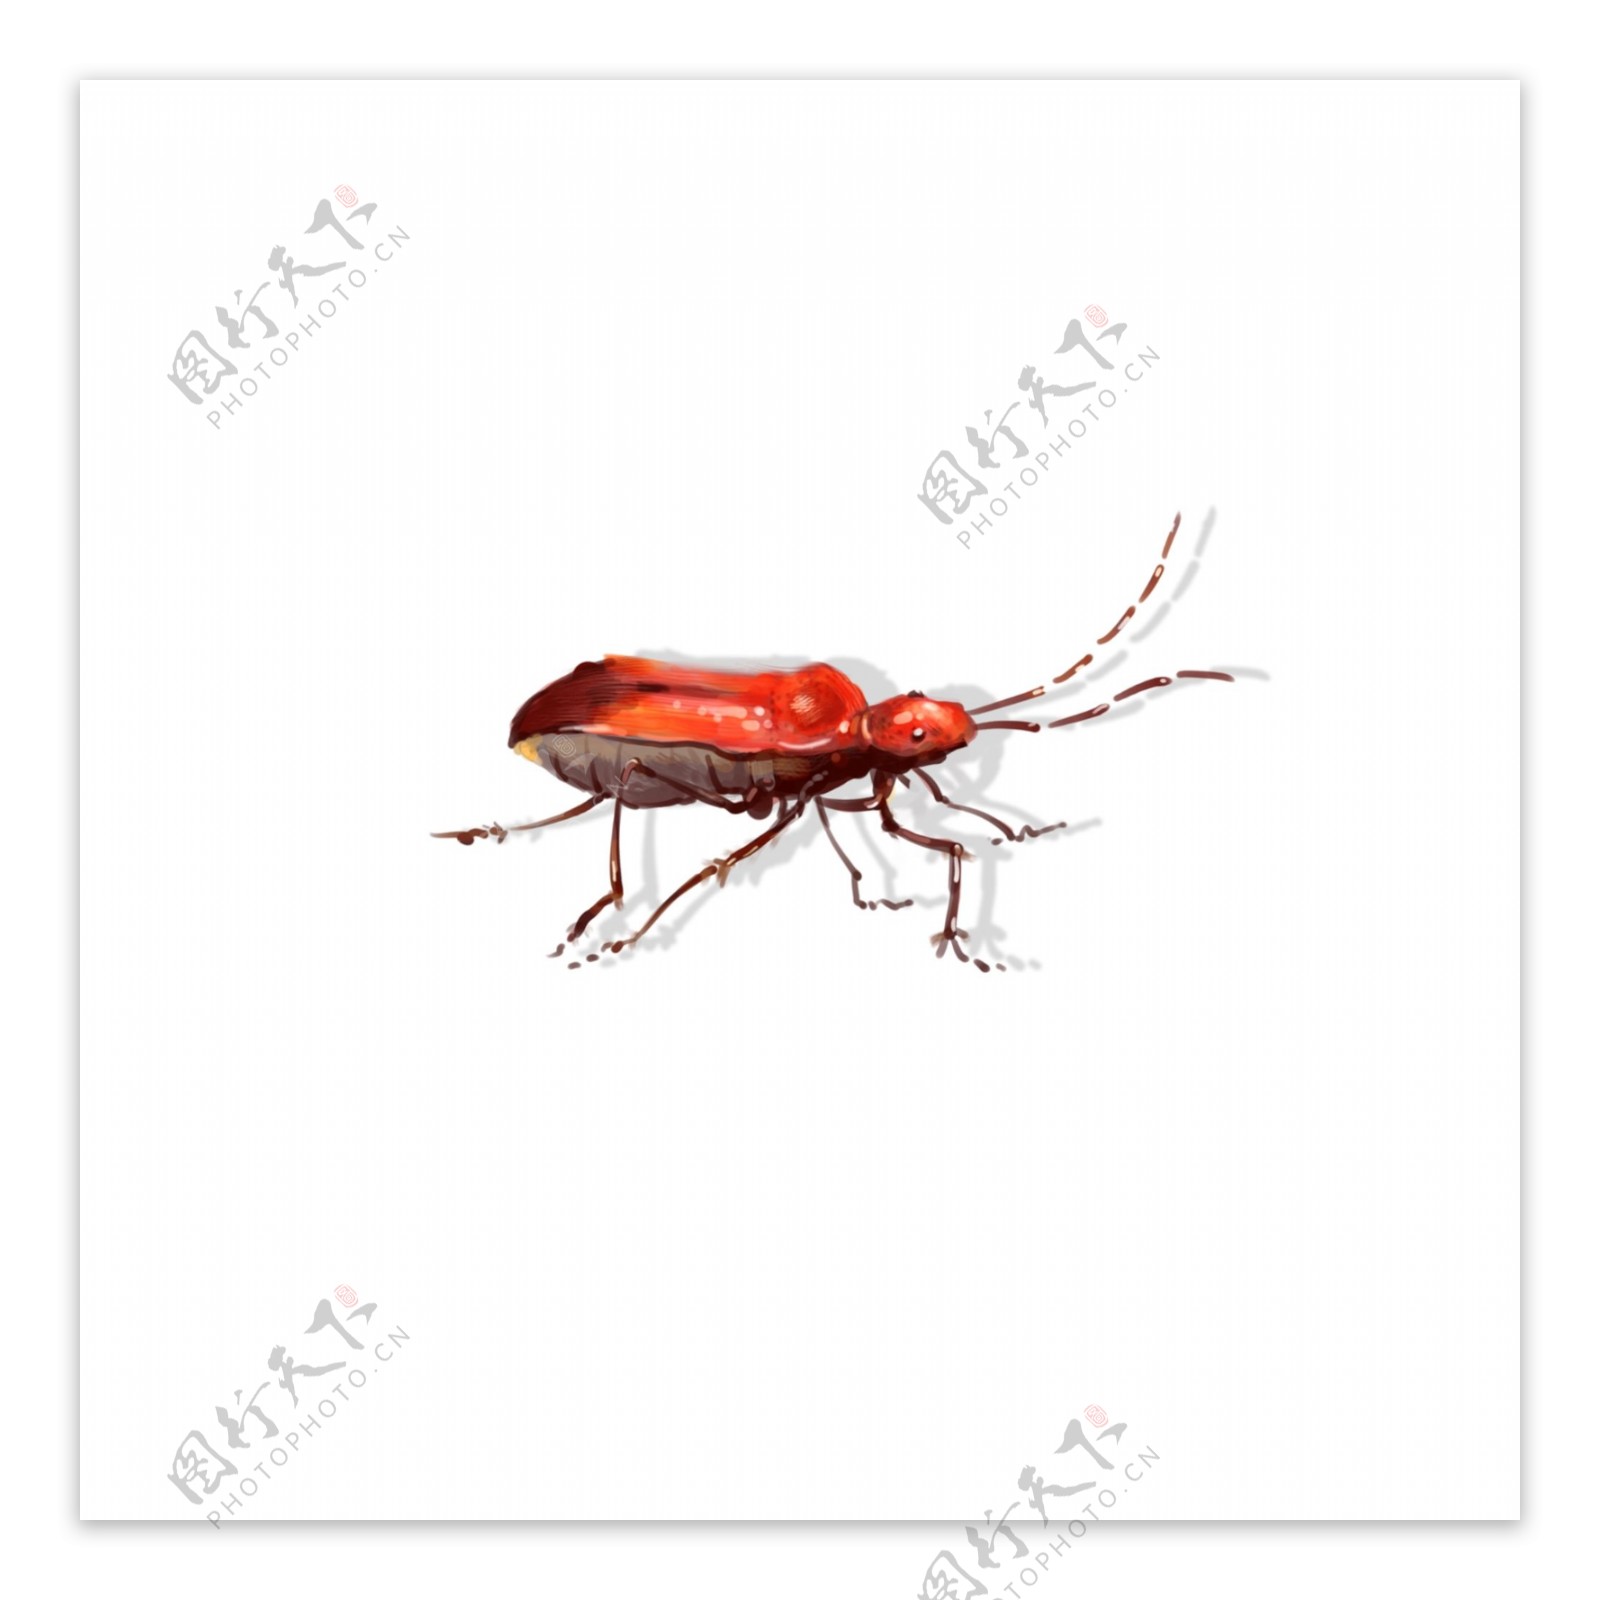 手绘中国风昆虫甲壳臭屁虫飞行虫子动物素材